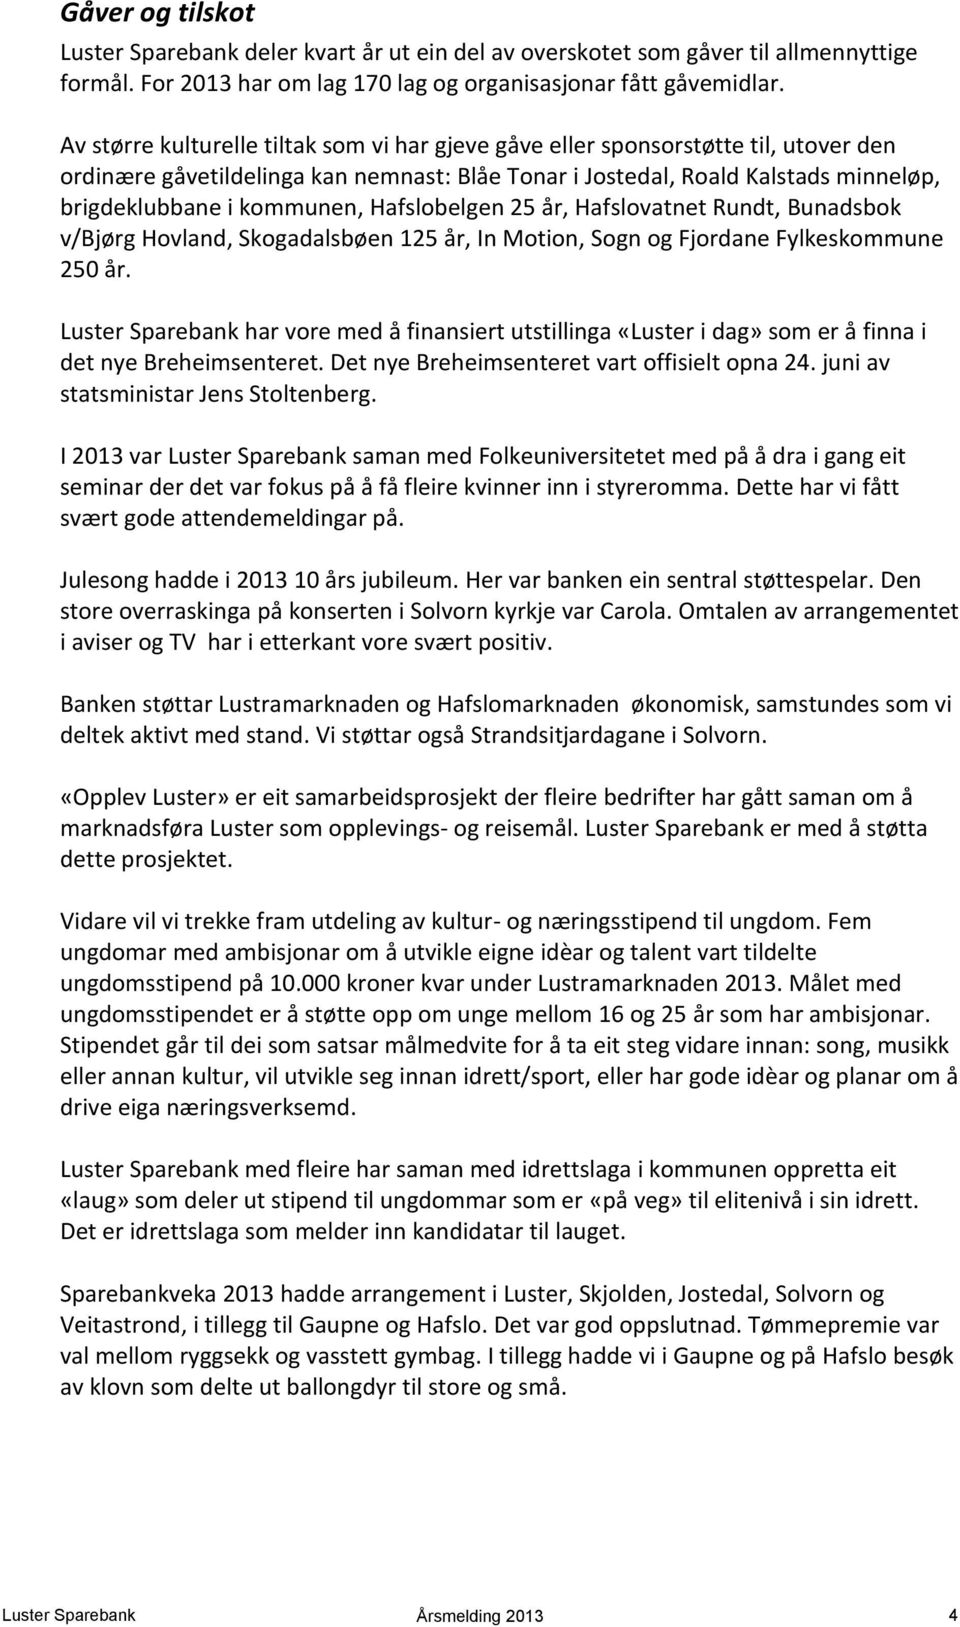 Hafslobelgen 25 år, Hafslovatnet Rundt, Bunadsbok v/bjørg Hovland, Skogadalsbøen 125 år, In Motion, Sogn og Fjordane Fylkeskommune 250 år.